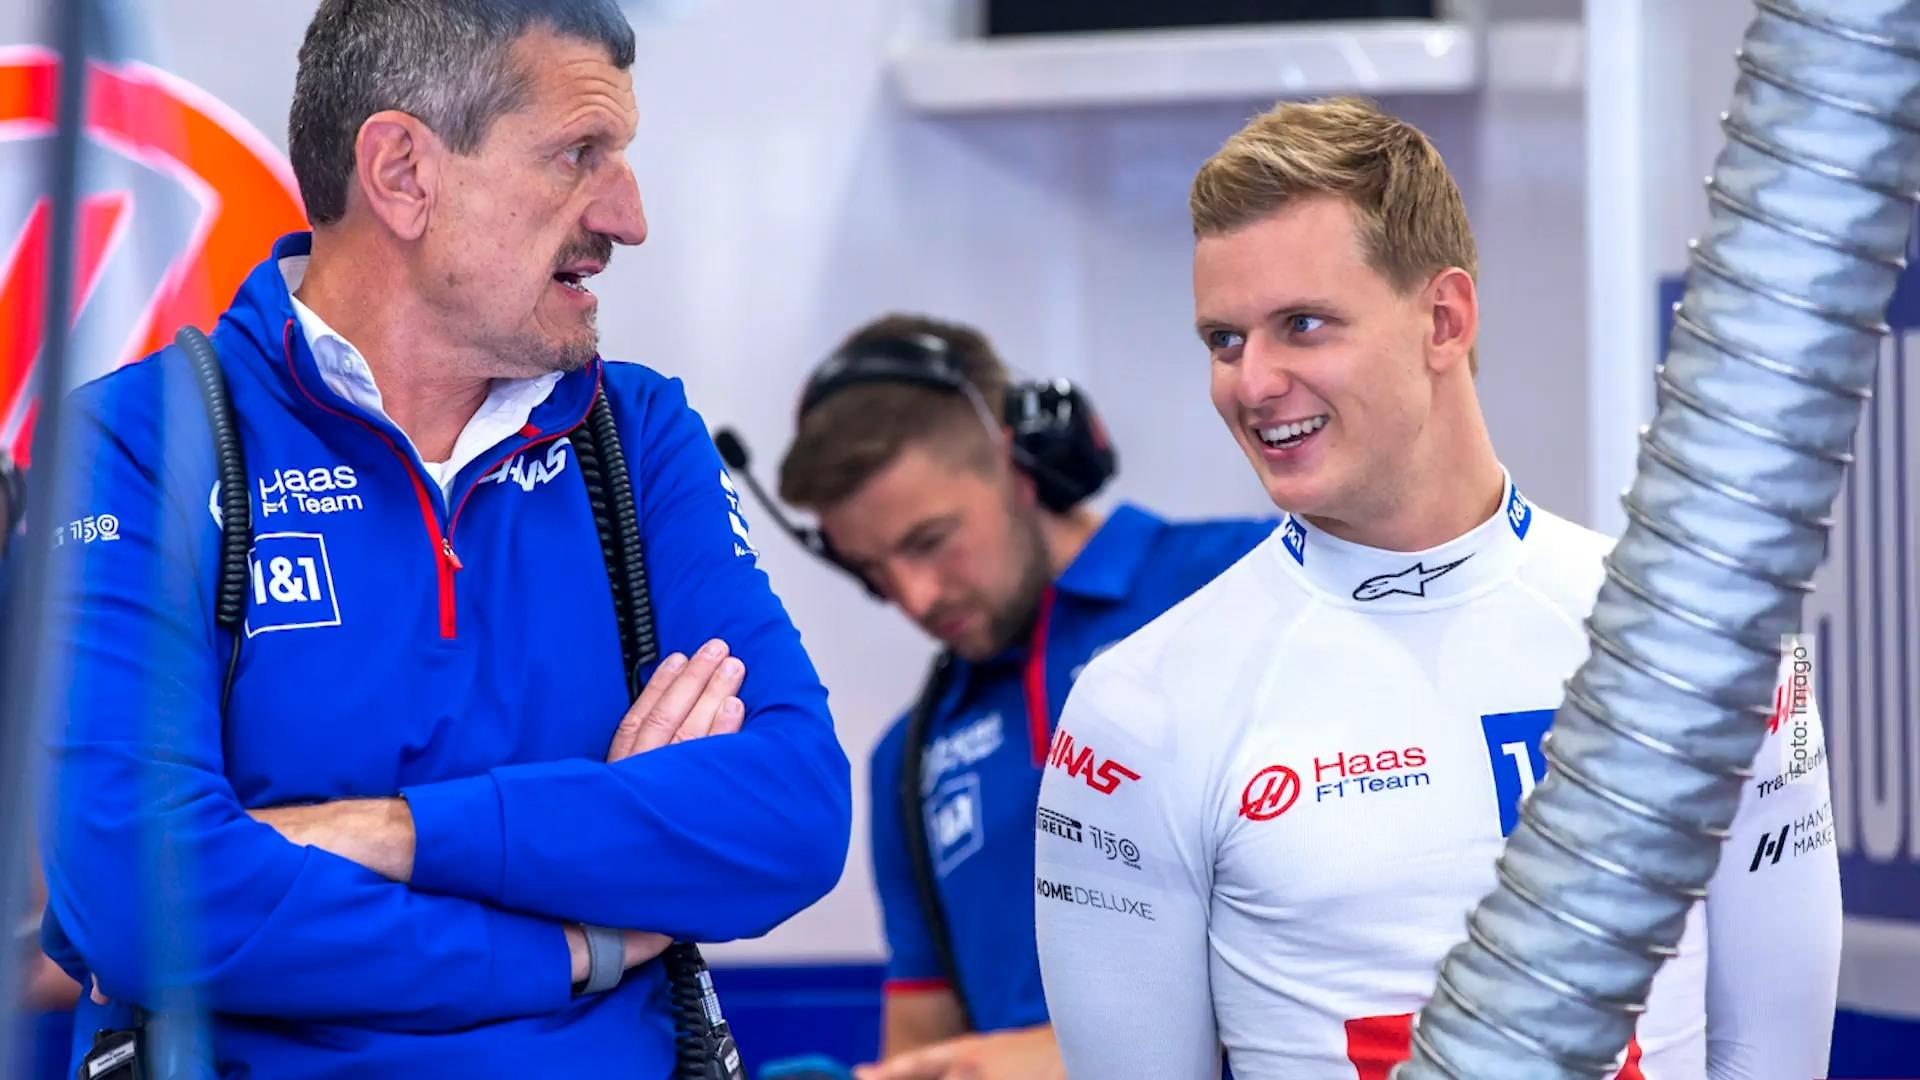 Steiner praises Schumacher Who will drive at Haas in 2023?